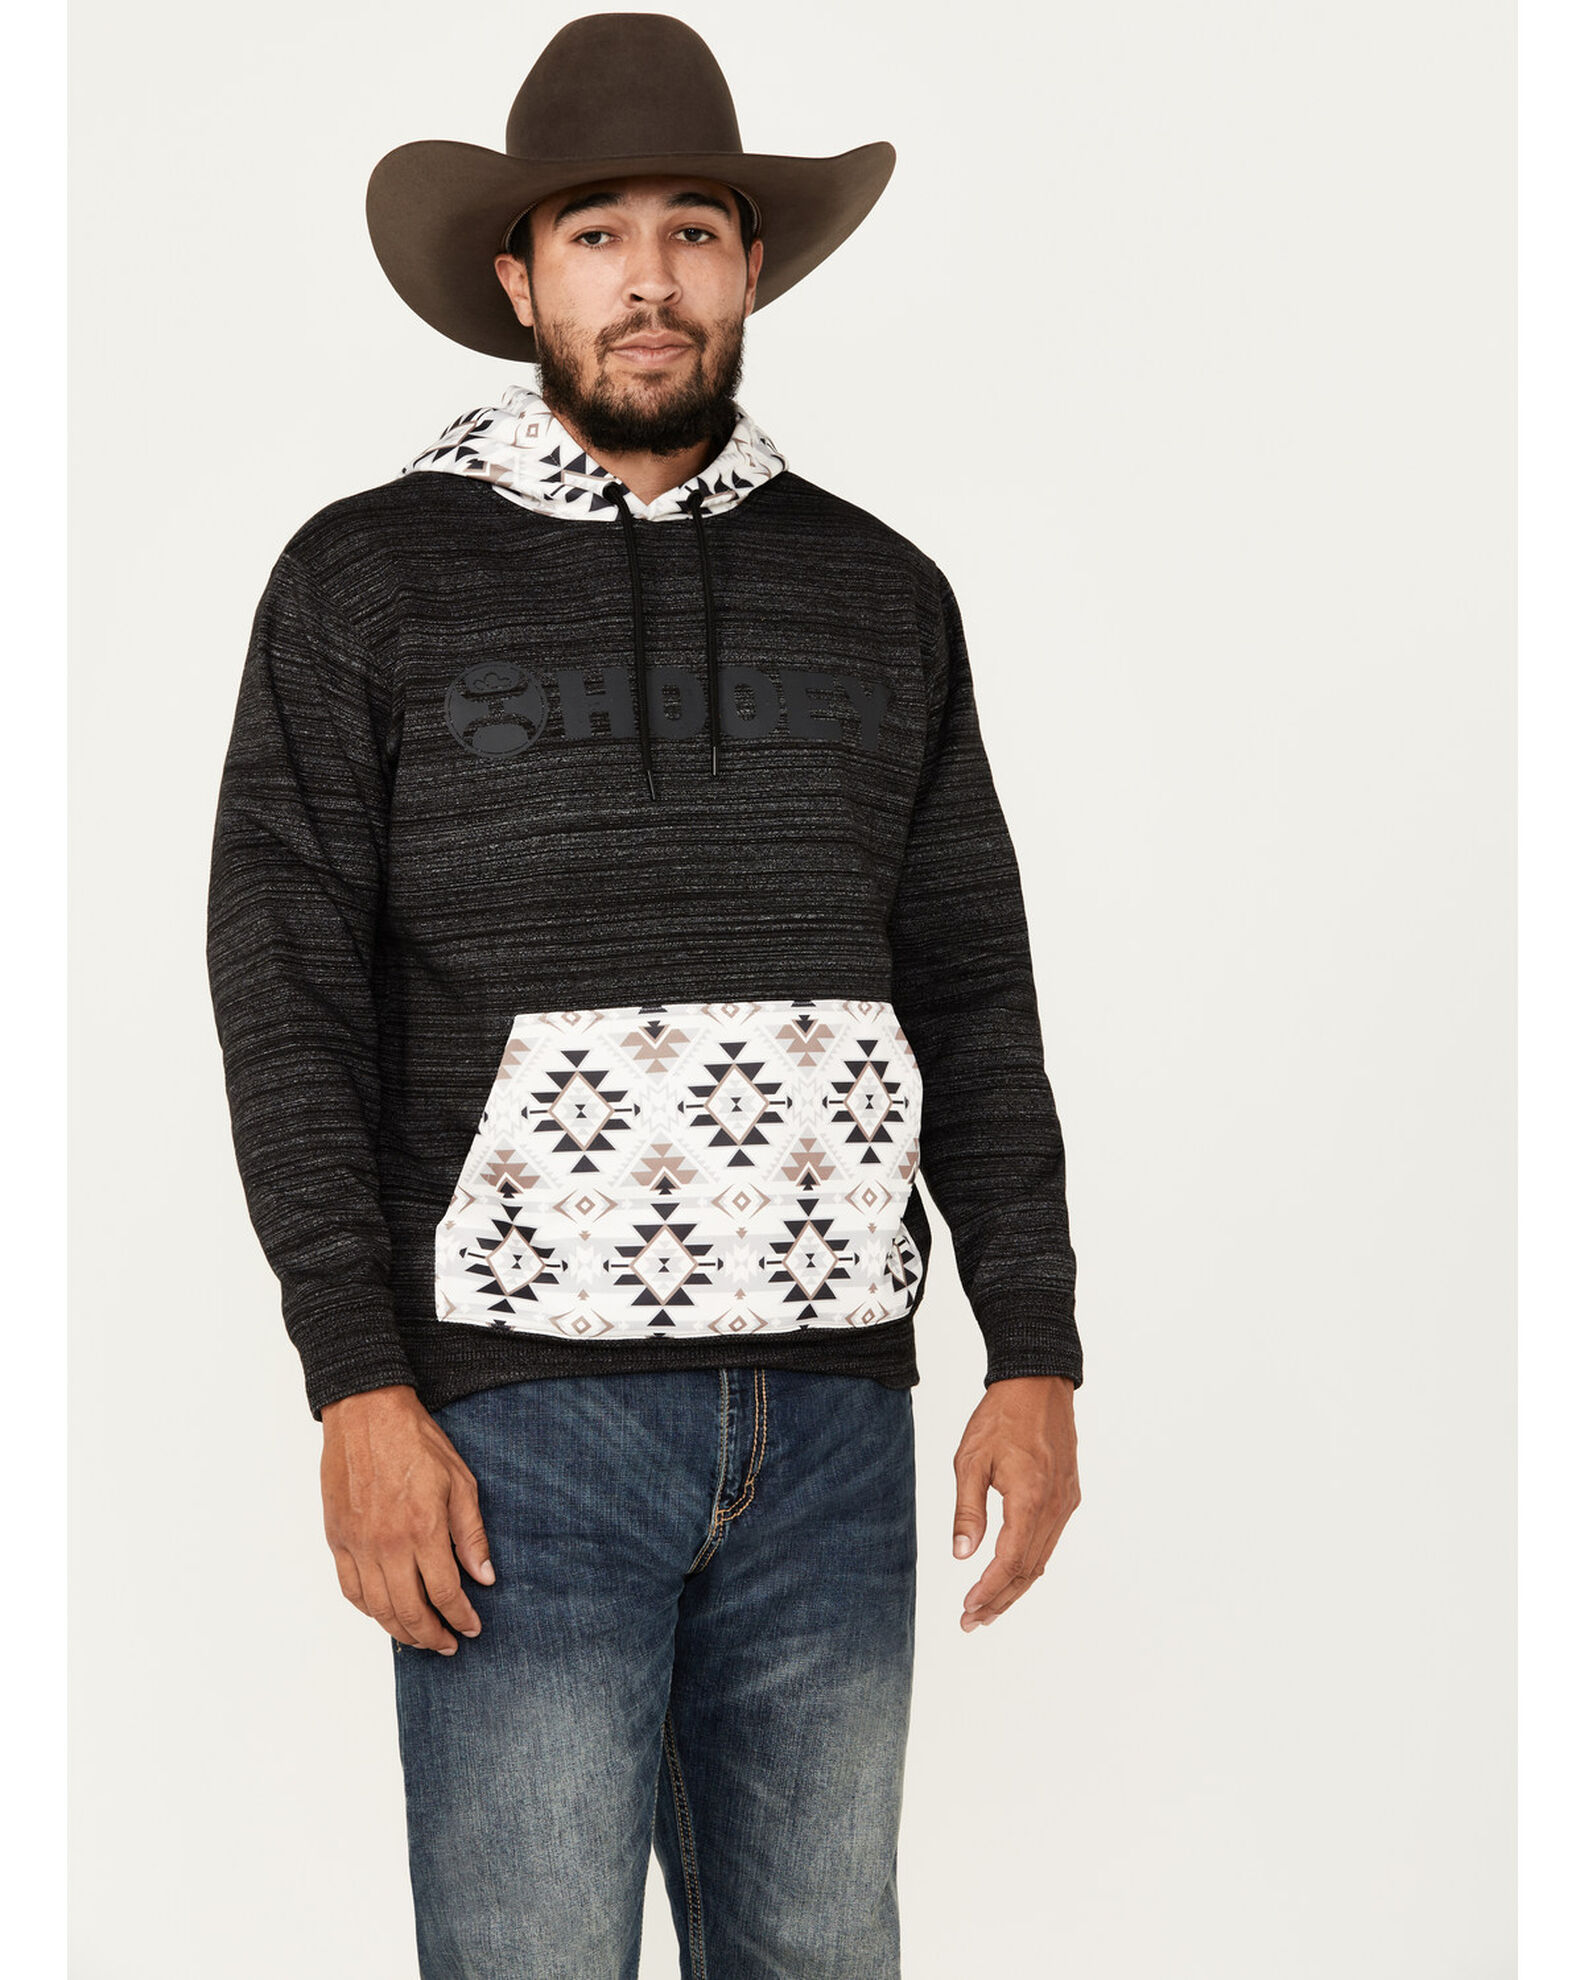 Hooey Men's Lock-Up Southwestern Block Print Hooded Sweatshirt